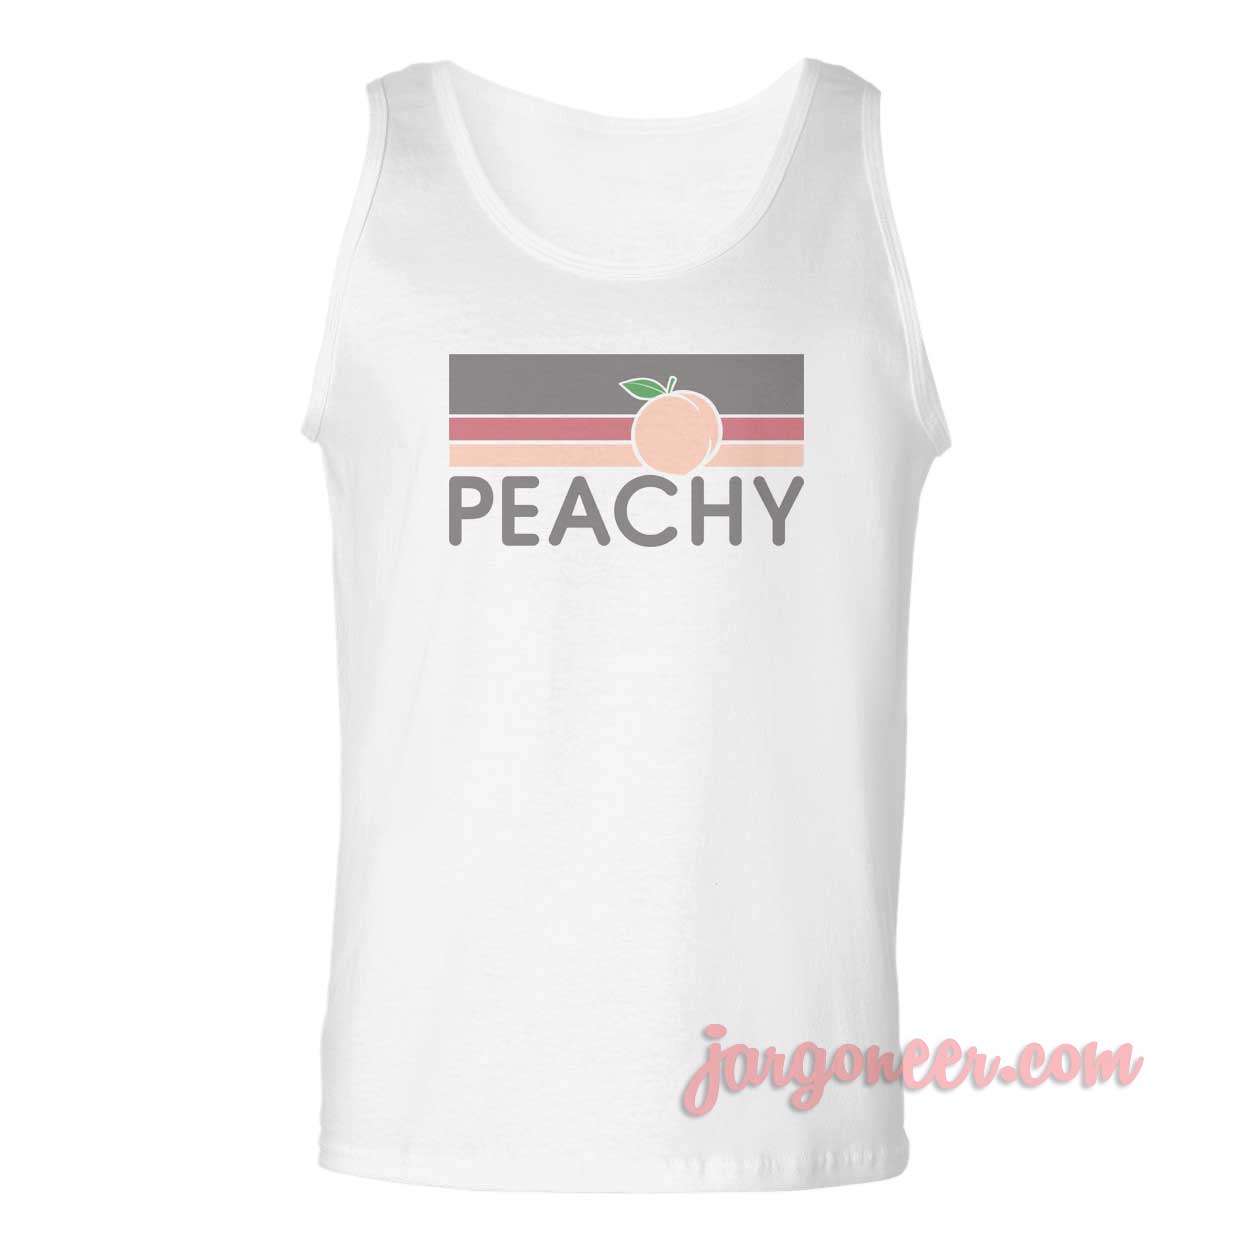 Peachy Retro Vintage - Shop Unique Graphic Cool Shirt Designs